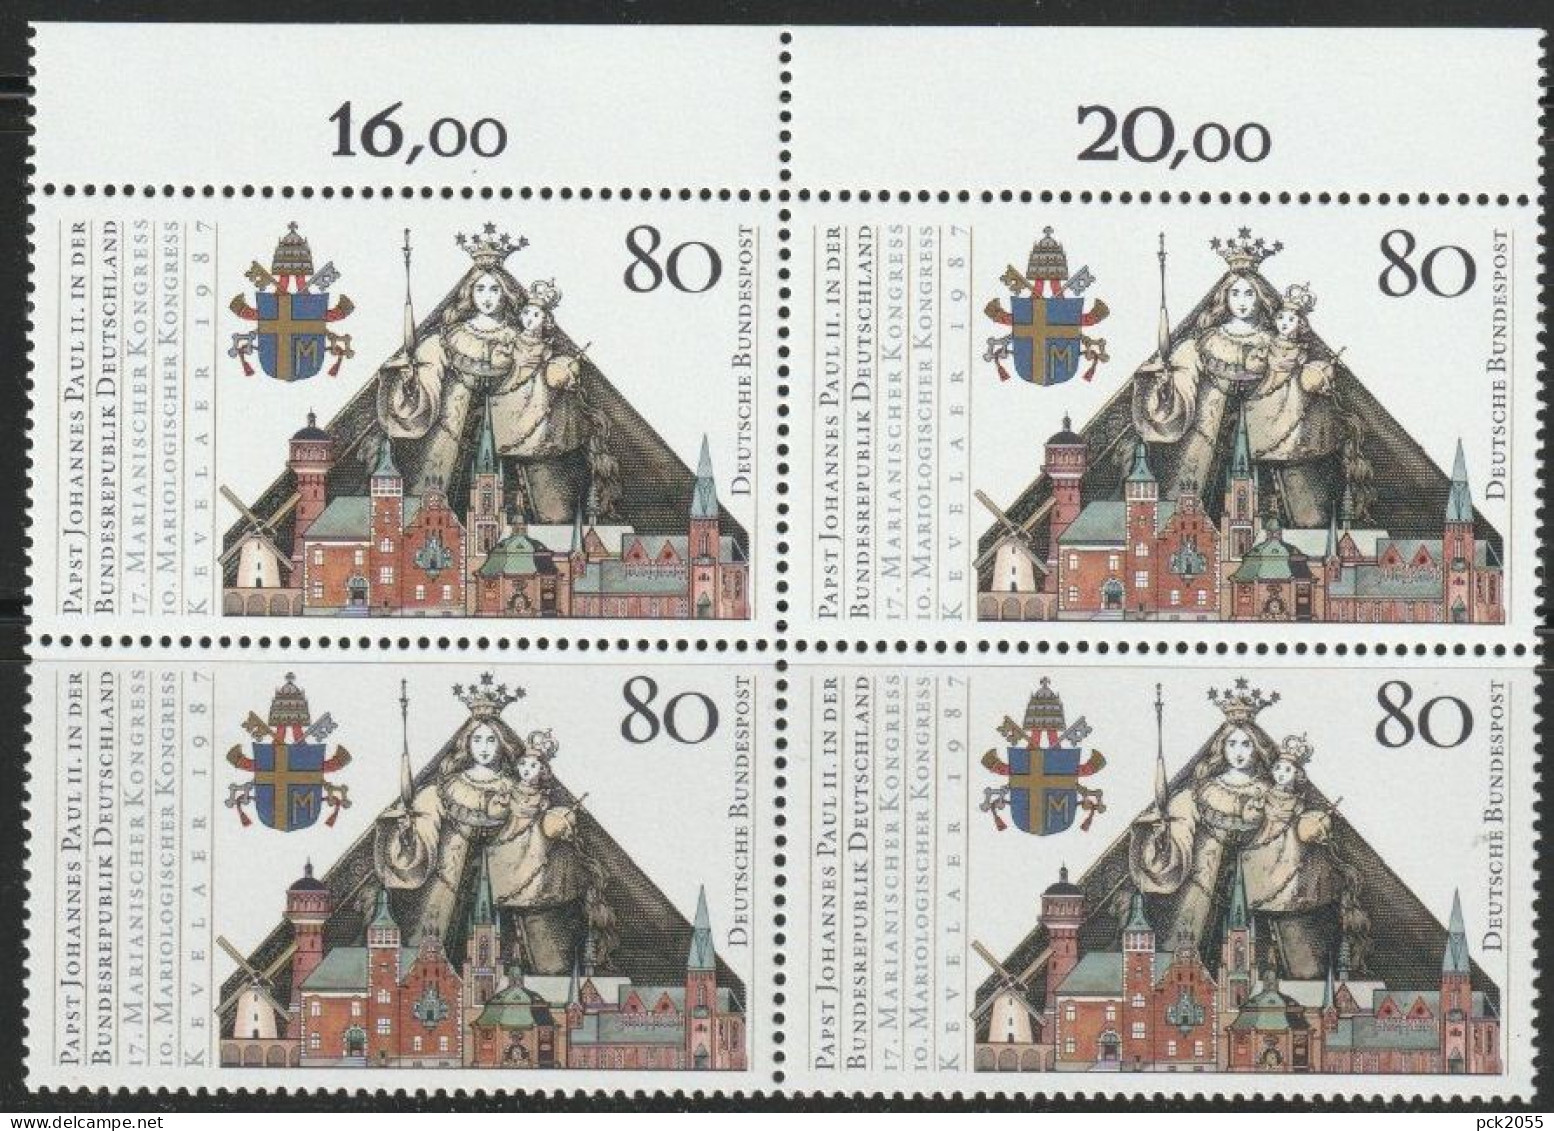 BRD 1987 MiNr.1320 4er Block ** Postfrisch Besuch Papst Johannes Paul II  ( 456 )günstige Versandkosten - Ungebraucht